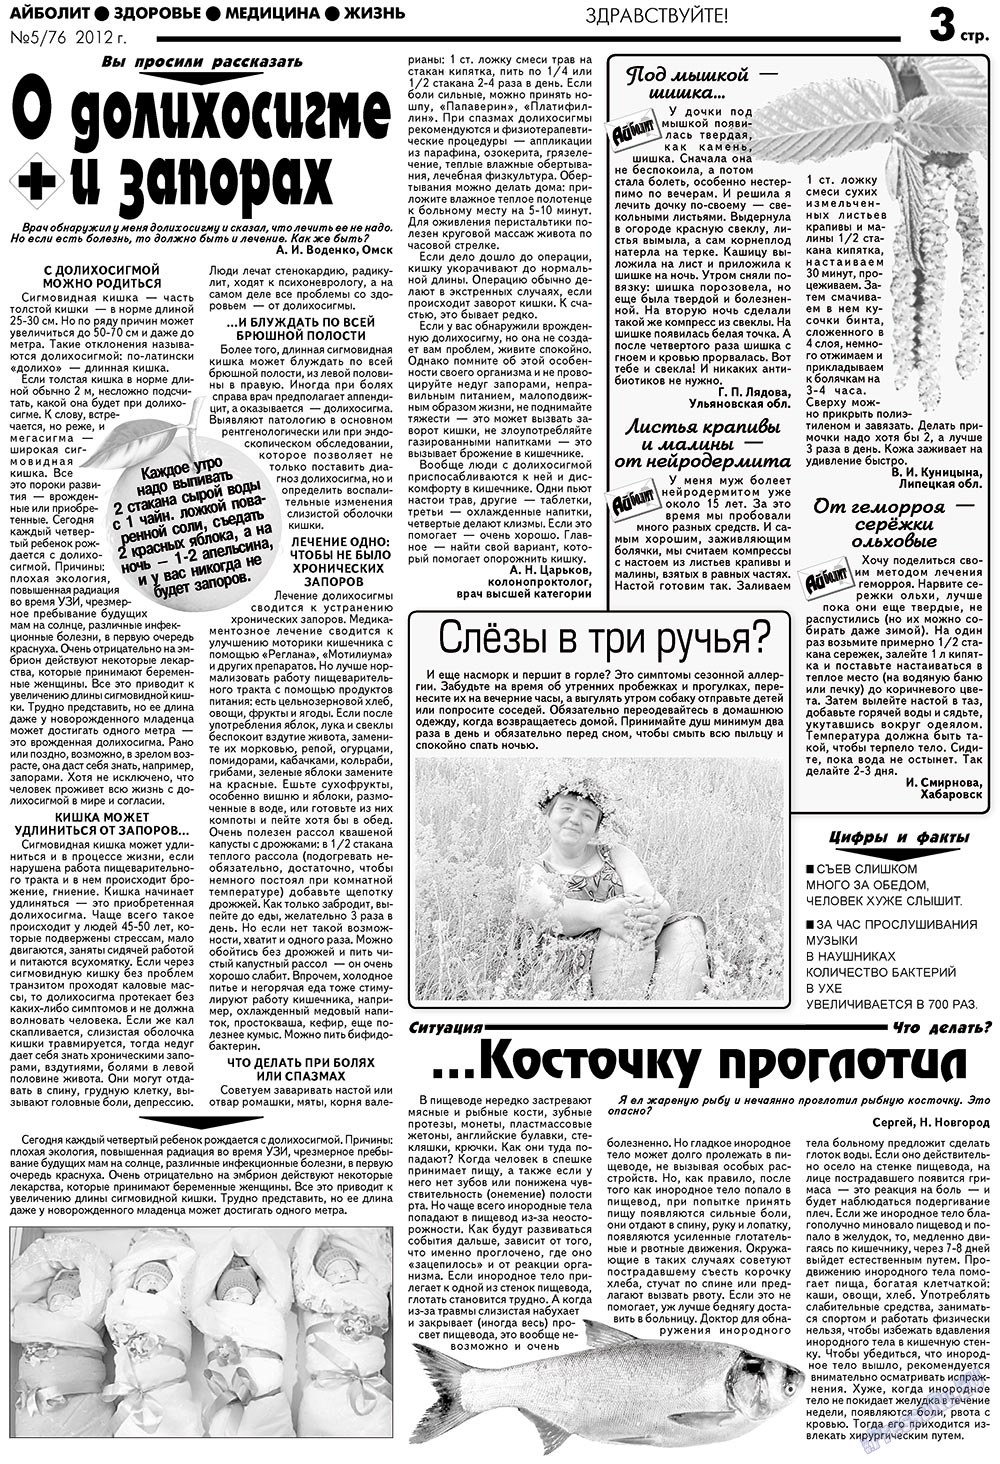 АйБолит, газета. 2012 №5 стр.3